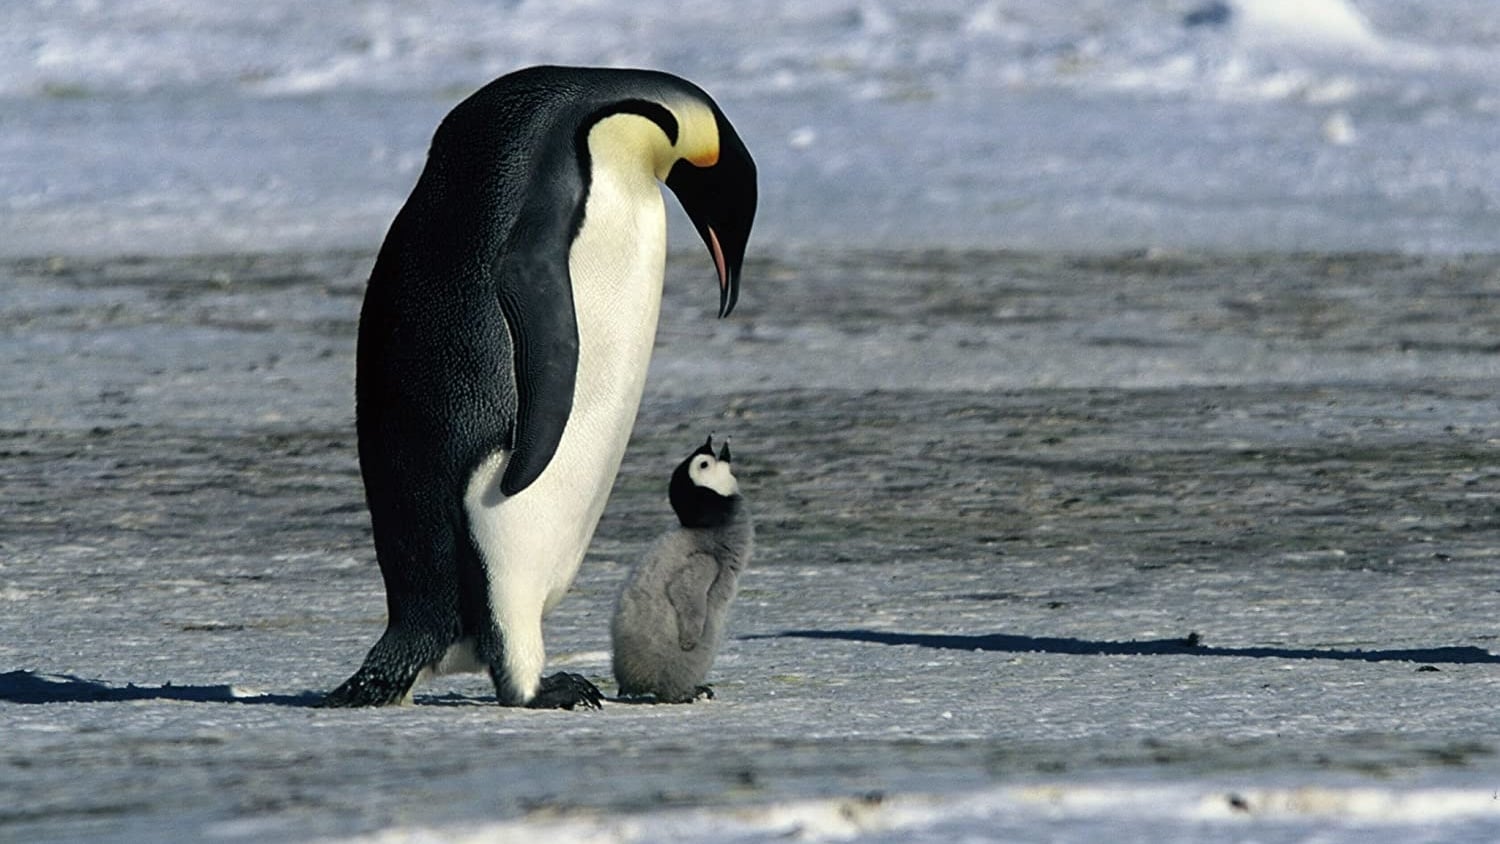 Pingvinek vándorlása (2005)